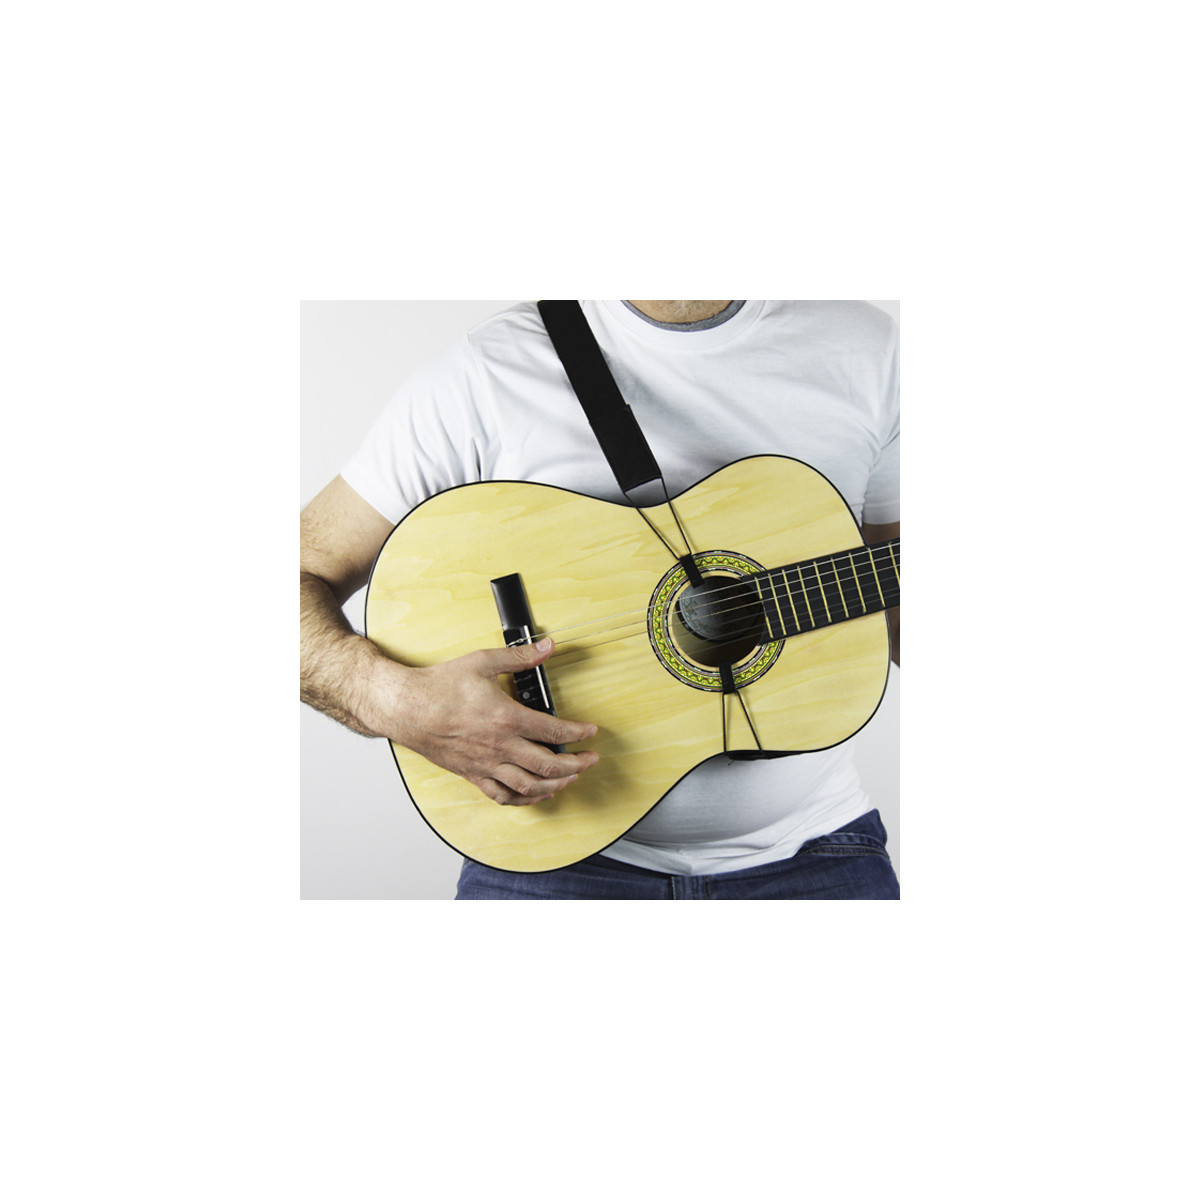 Correa guitarra española – Tienda Musical Online